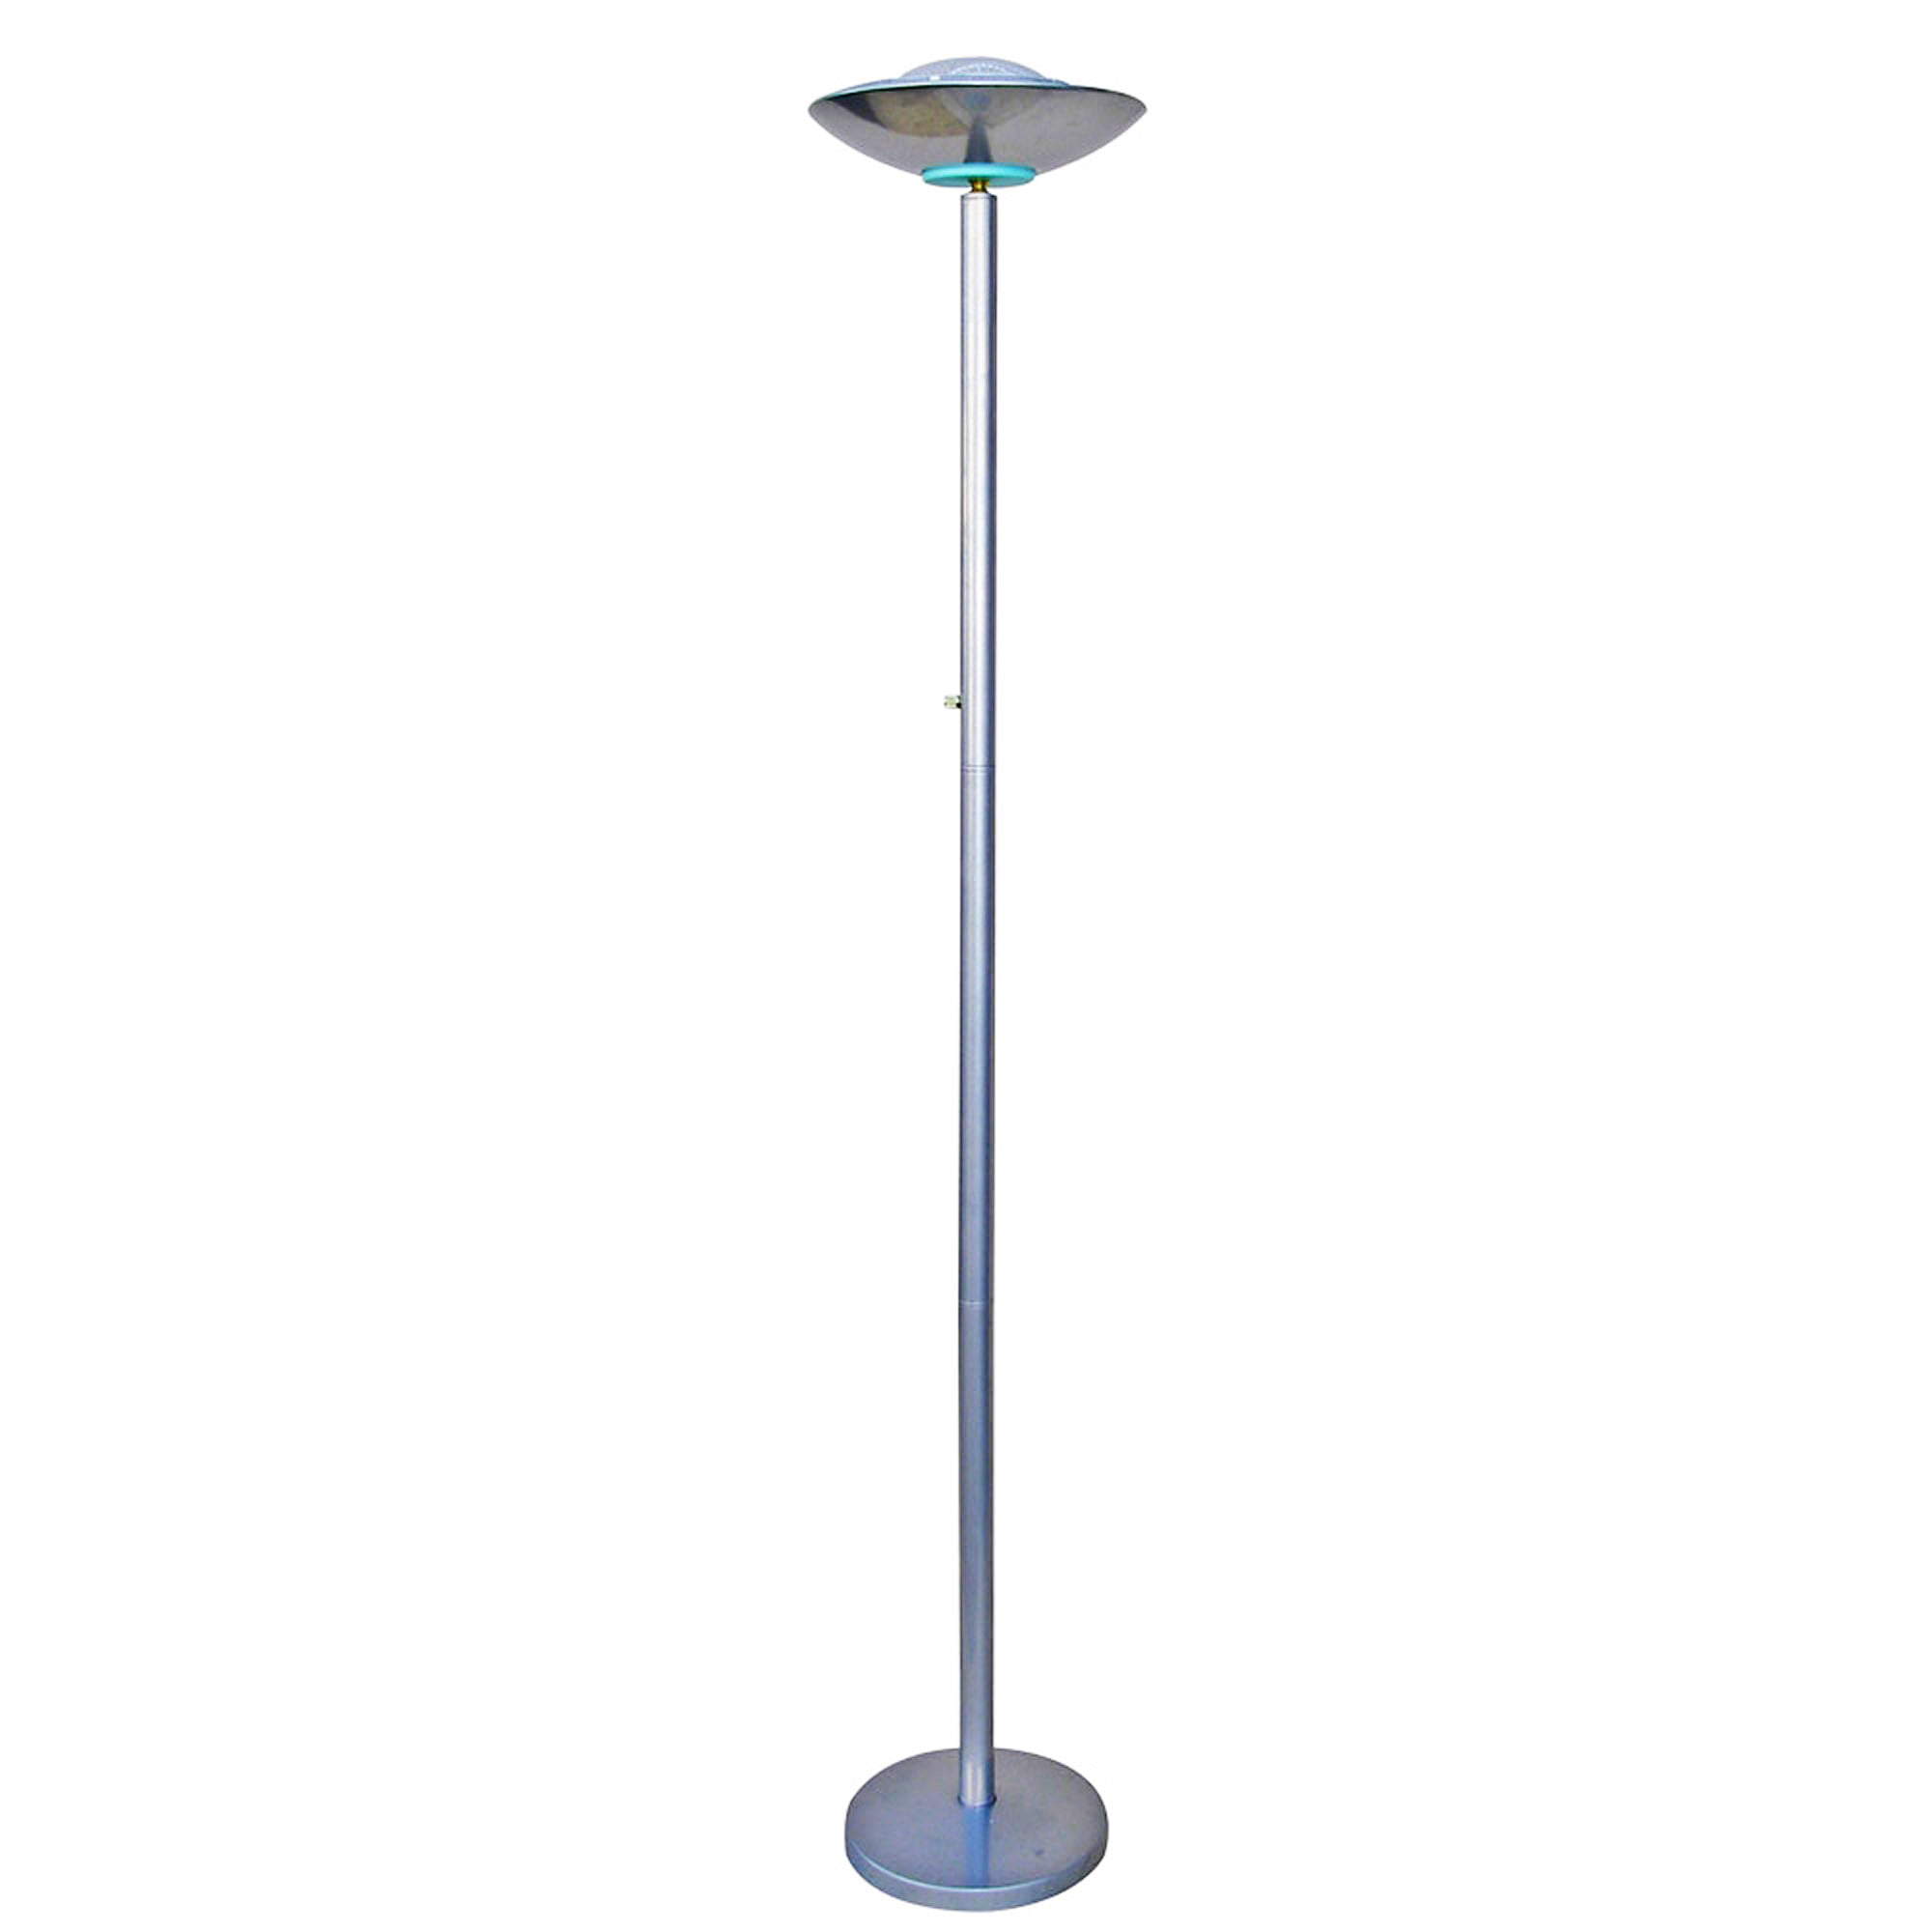 Ore International 190w Halogen, Floor Standing Halogen Lamps